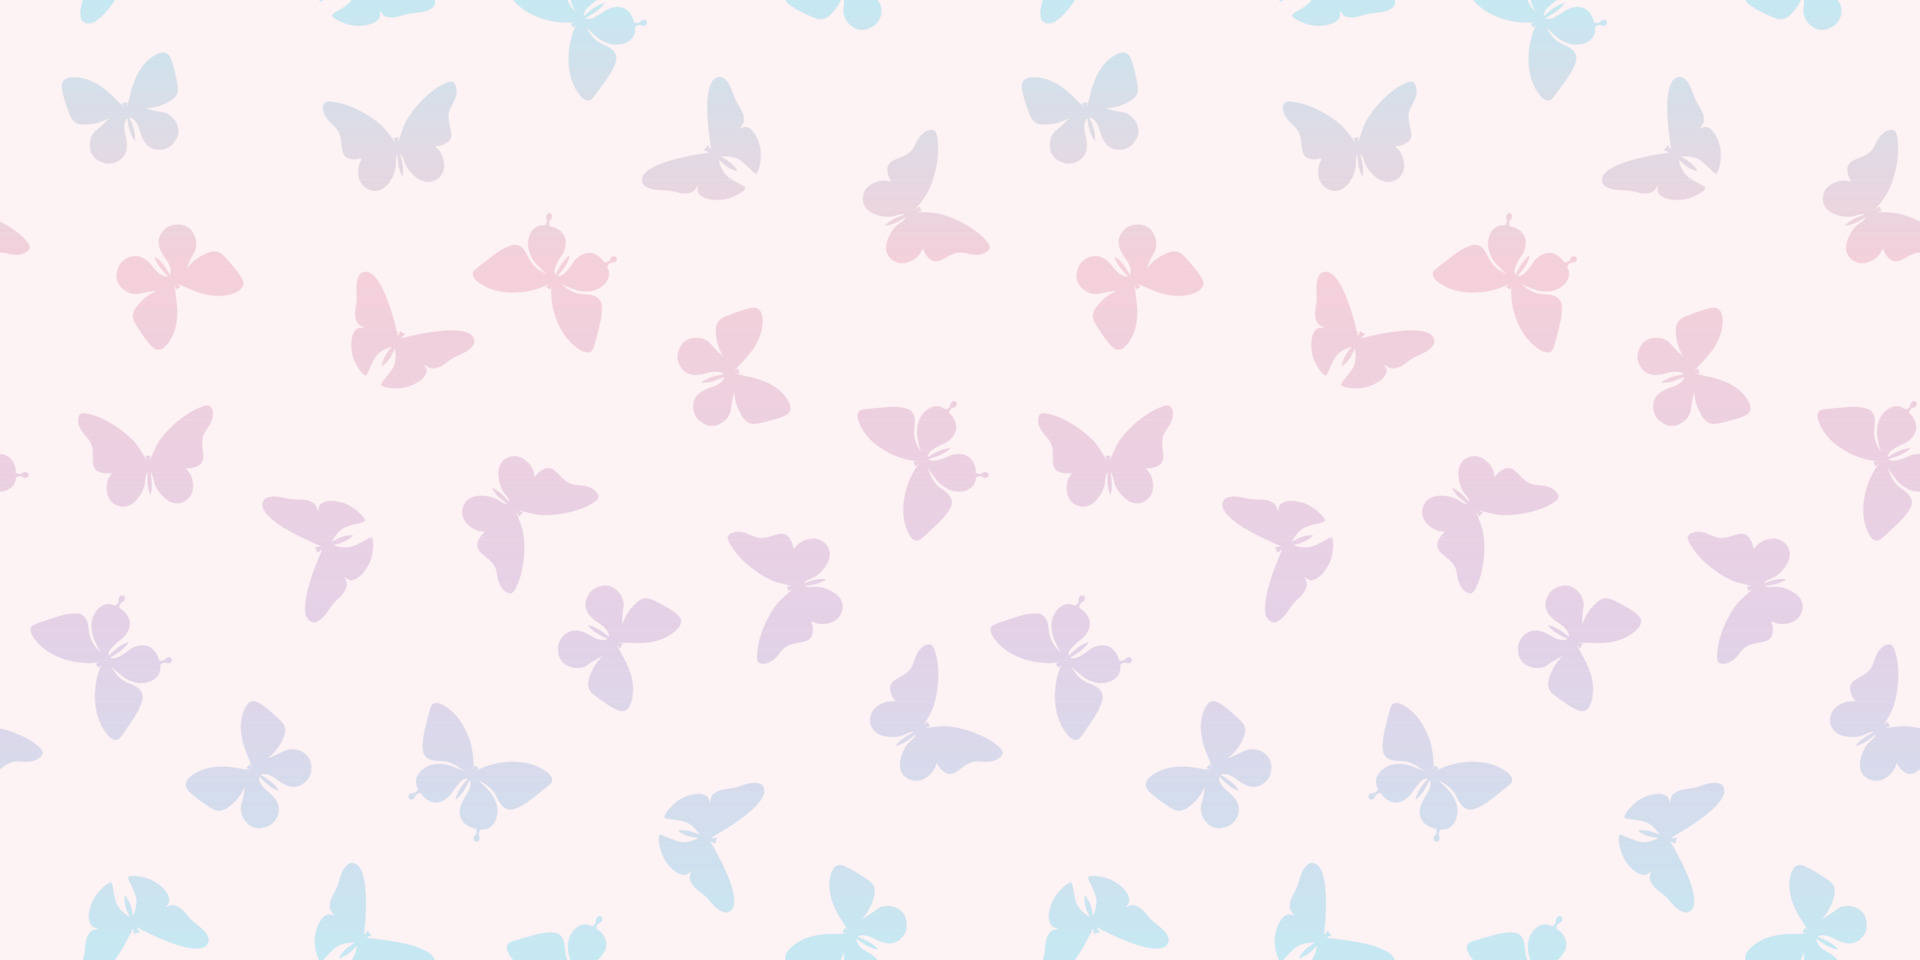 Espléndidodiseño De Patrón De Mariposas En Tonos Pastel Fondo de pantalla